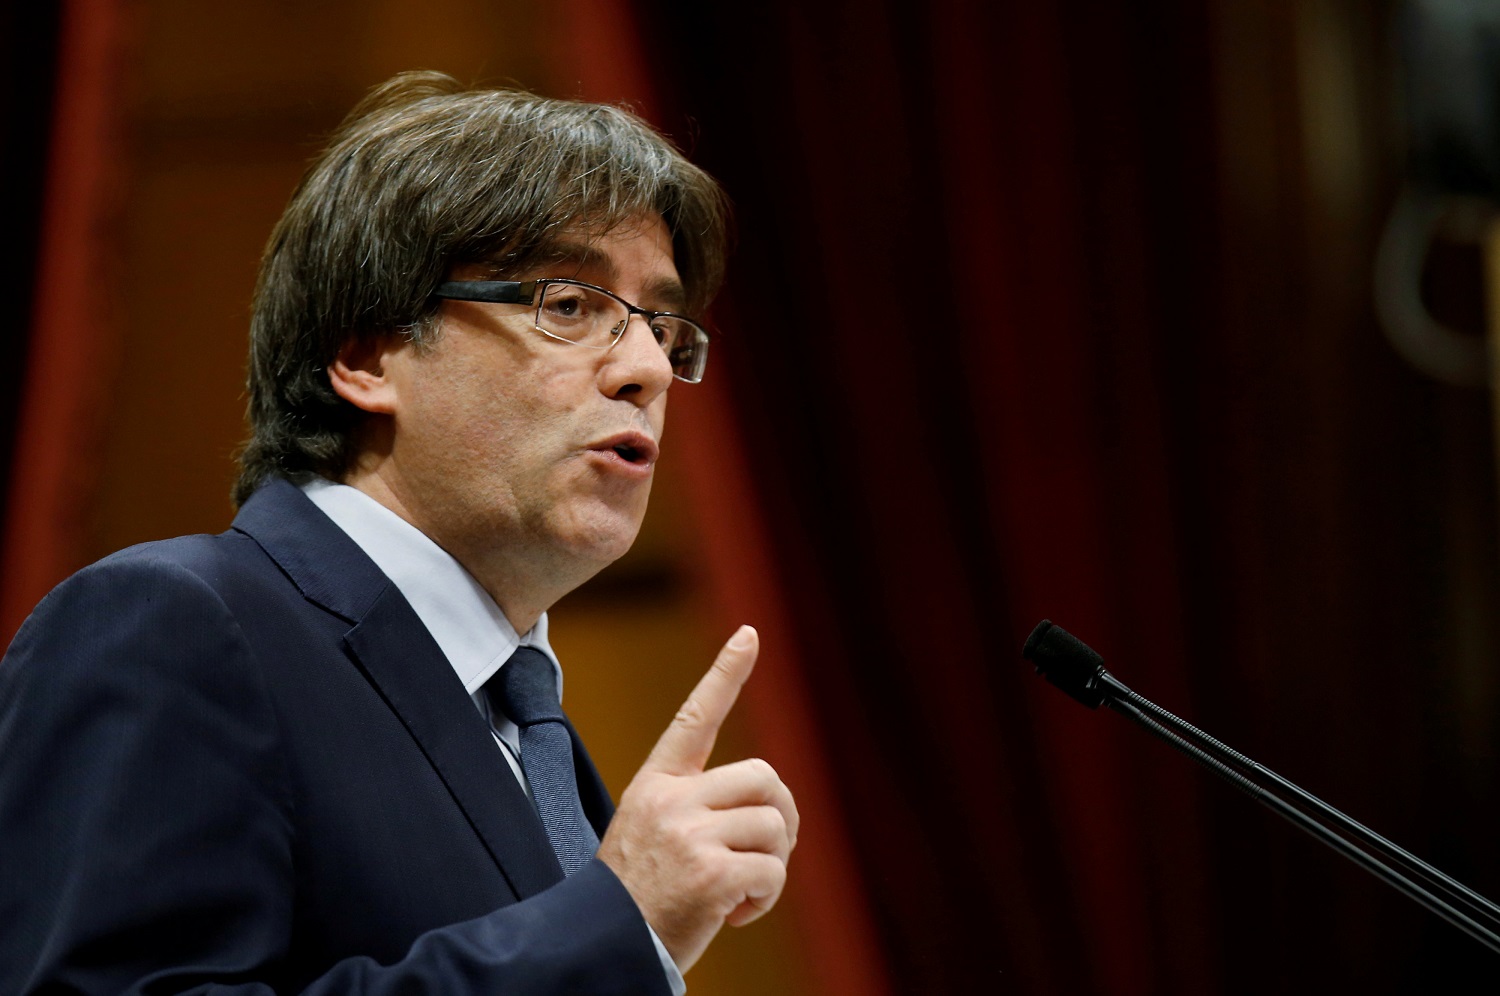 El expresidente catalán Puigdemont ofrecerá una rueda de prensa en Bruselas